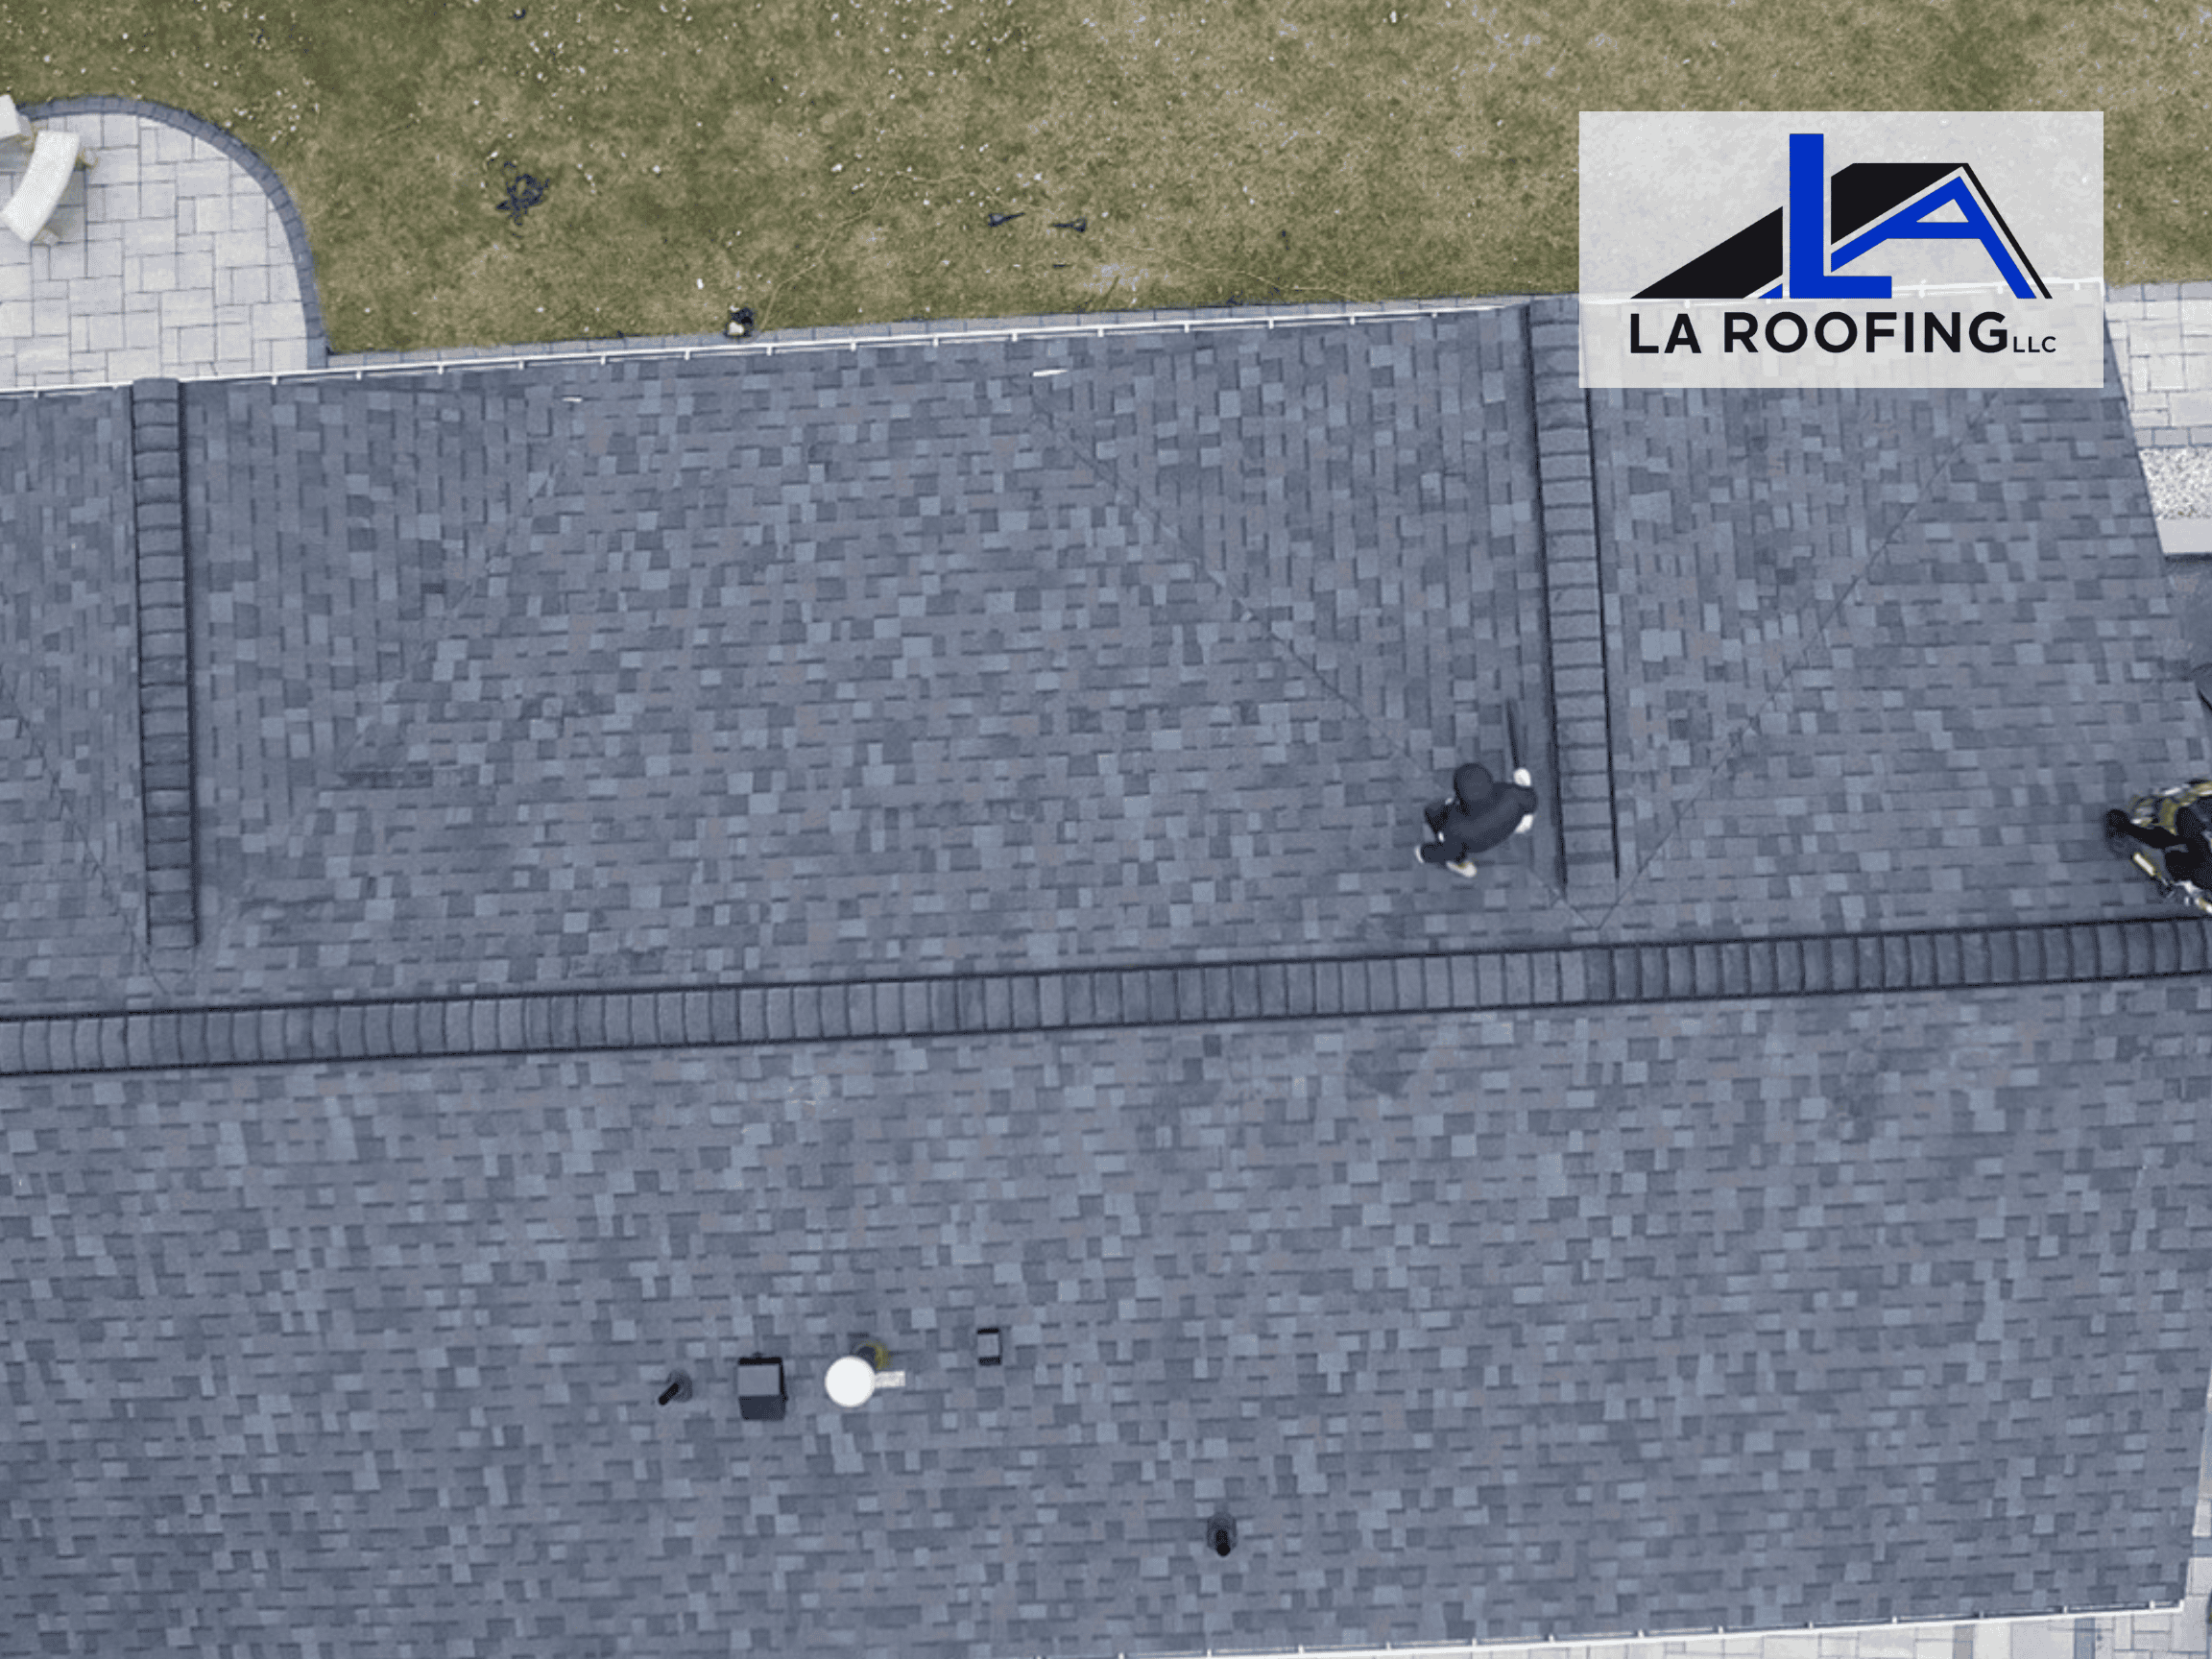 Roof leak repair